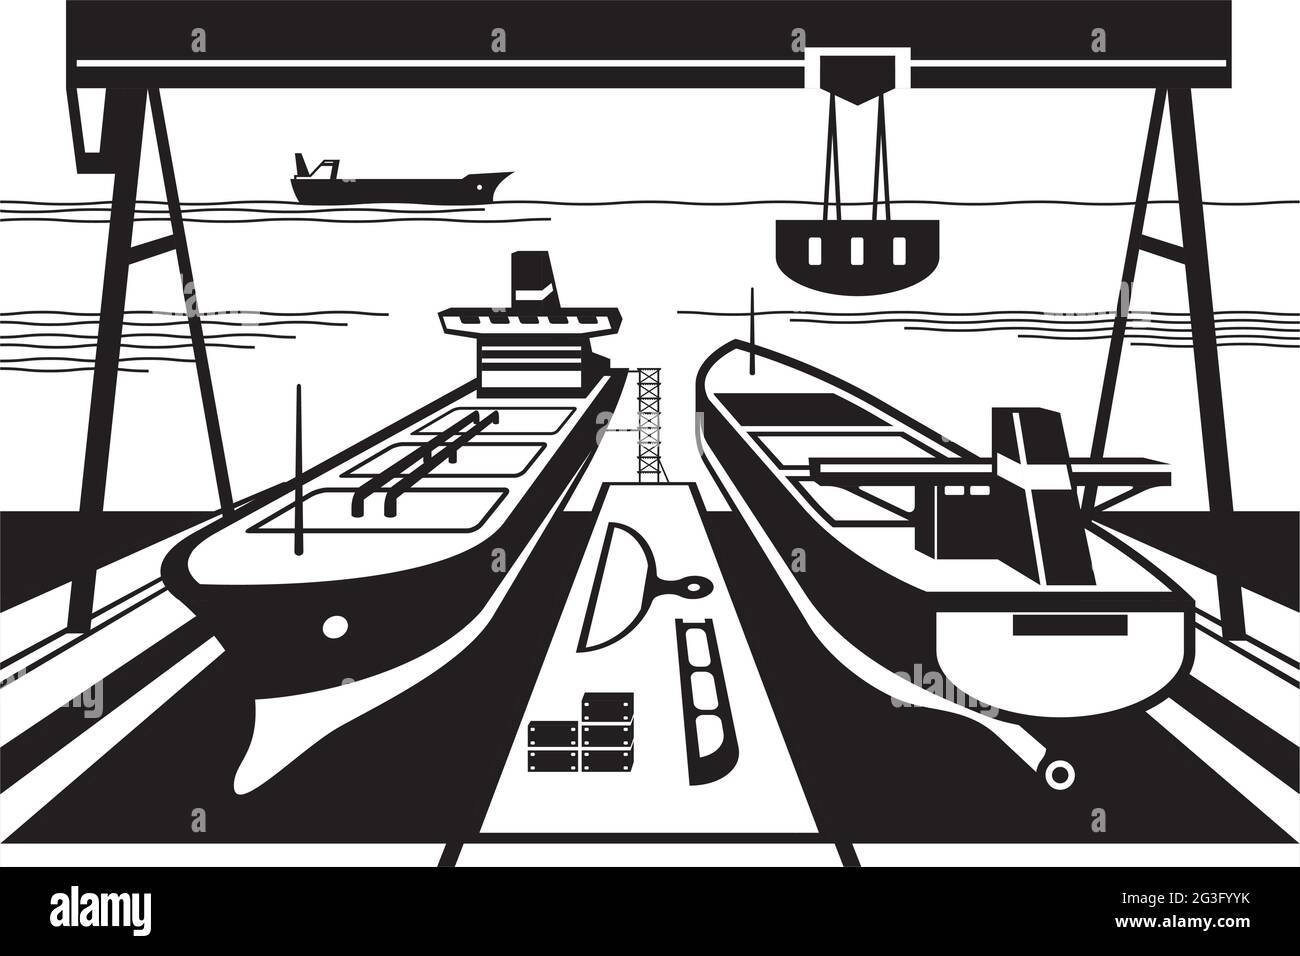 Chantier naval avec quais et grues - illustration vectorielle Illustration de Vecteur